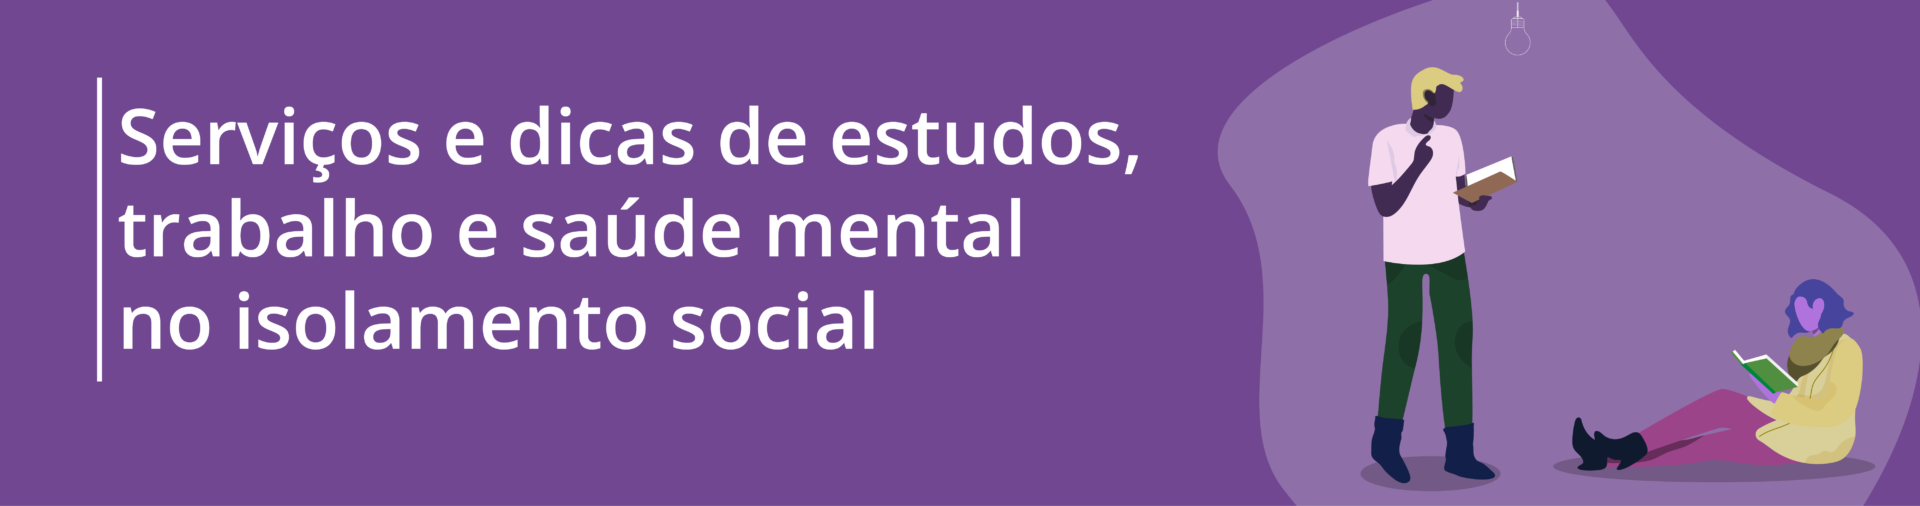 banner serviços e dicas de saúde mental durante o isolamento social